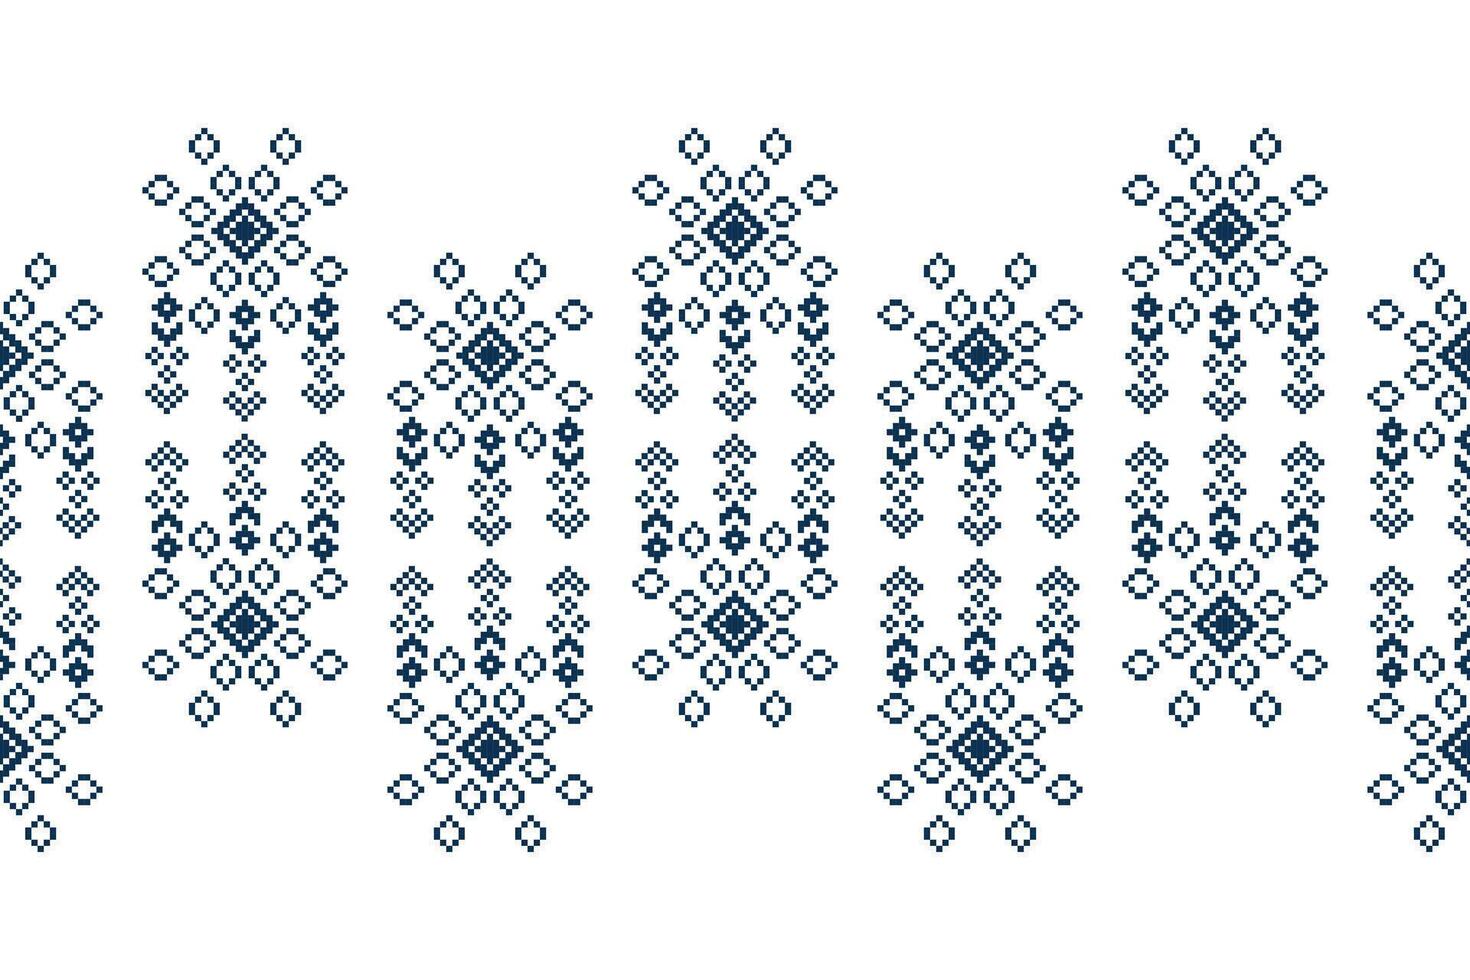 traditioneel etnisch motieven ikat meetkundig kleding stof patroon kruis steek.ikat borduurwerk etnisch oosters pixel wit achtergrond.abstract,vector,illustratie. textuur, sjaal, decoratie, behang. vector